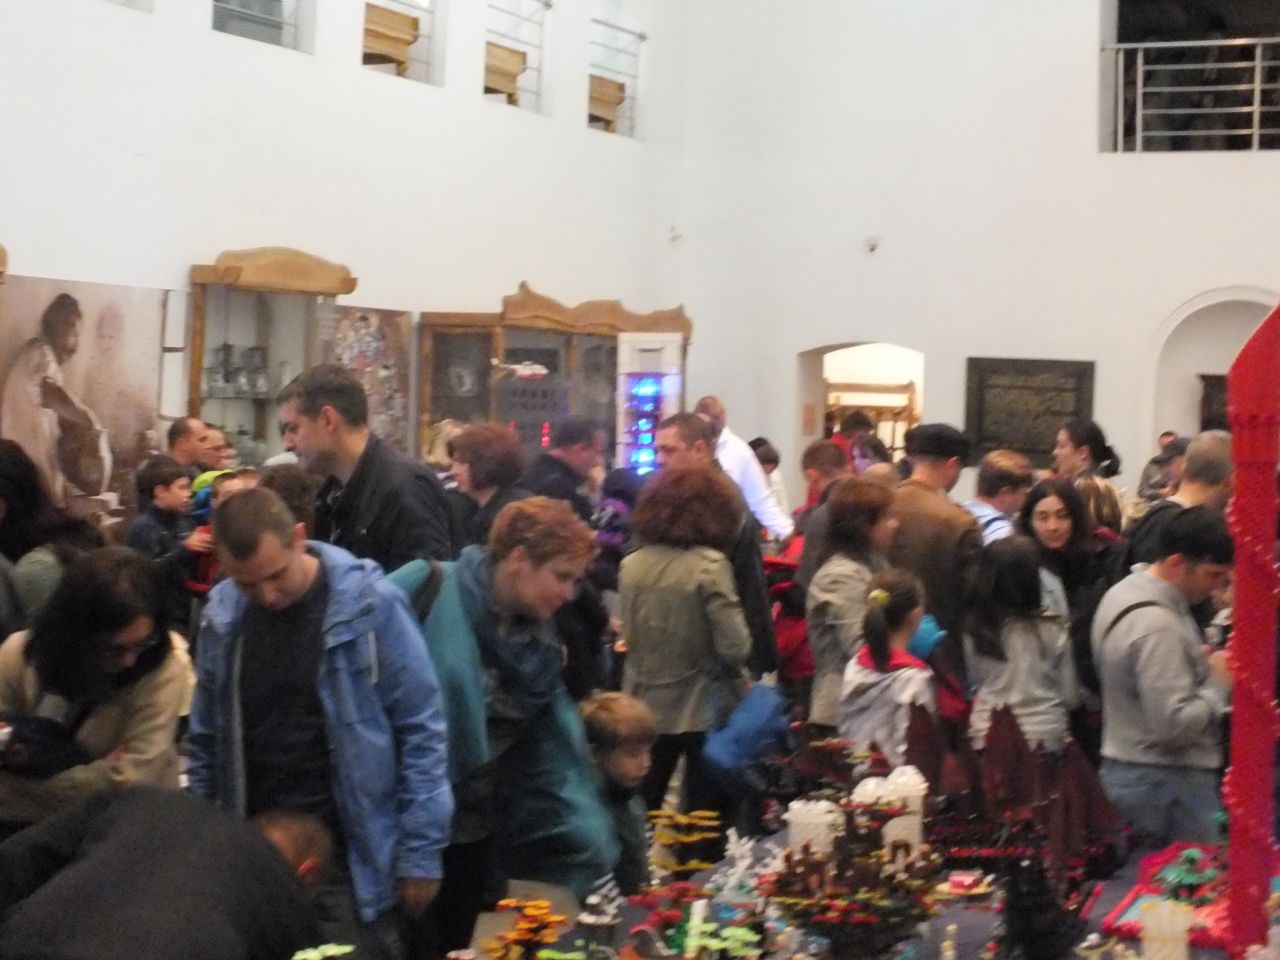 Peste 1000 de copii au vizitat expozitia de Lego de la Muzeul Etnografic, de 1 iunie 